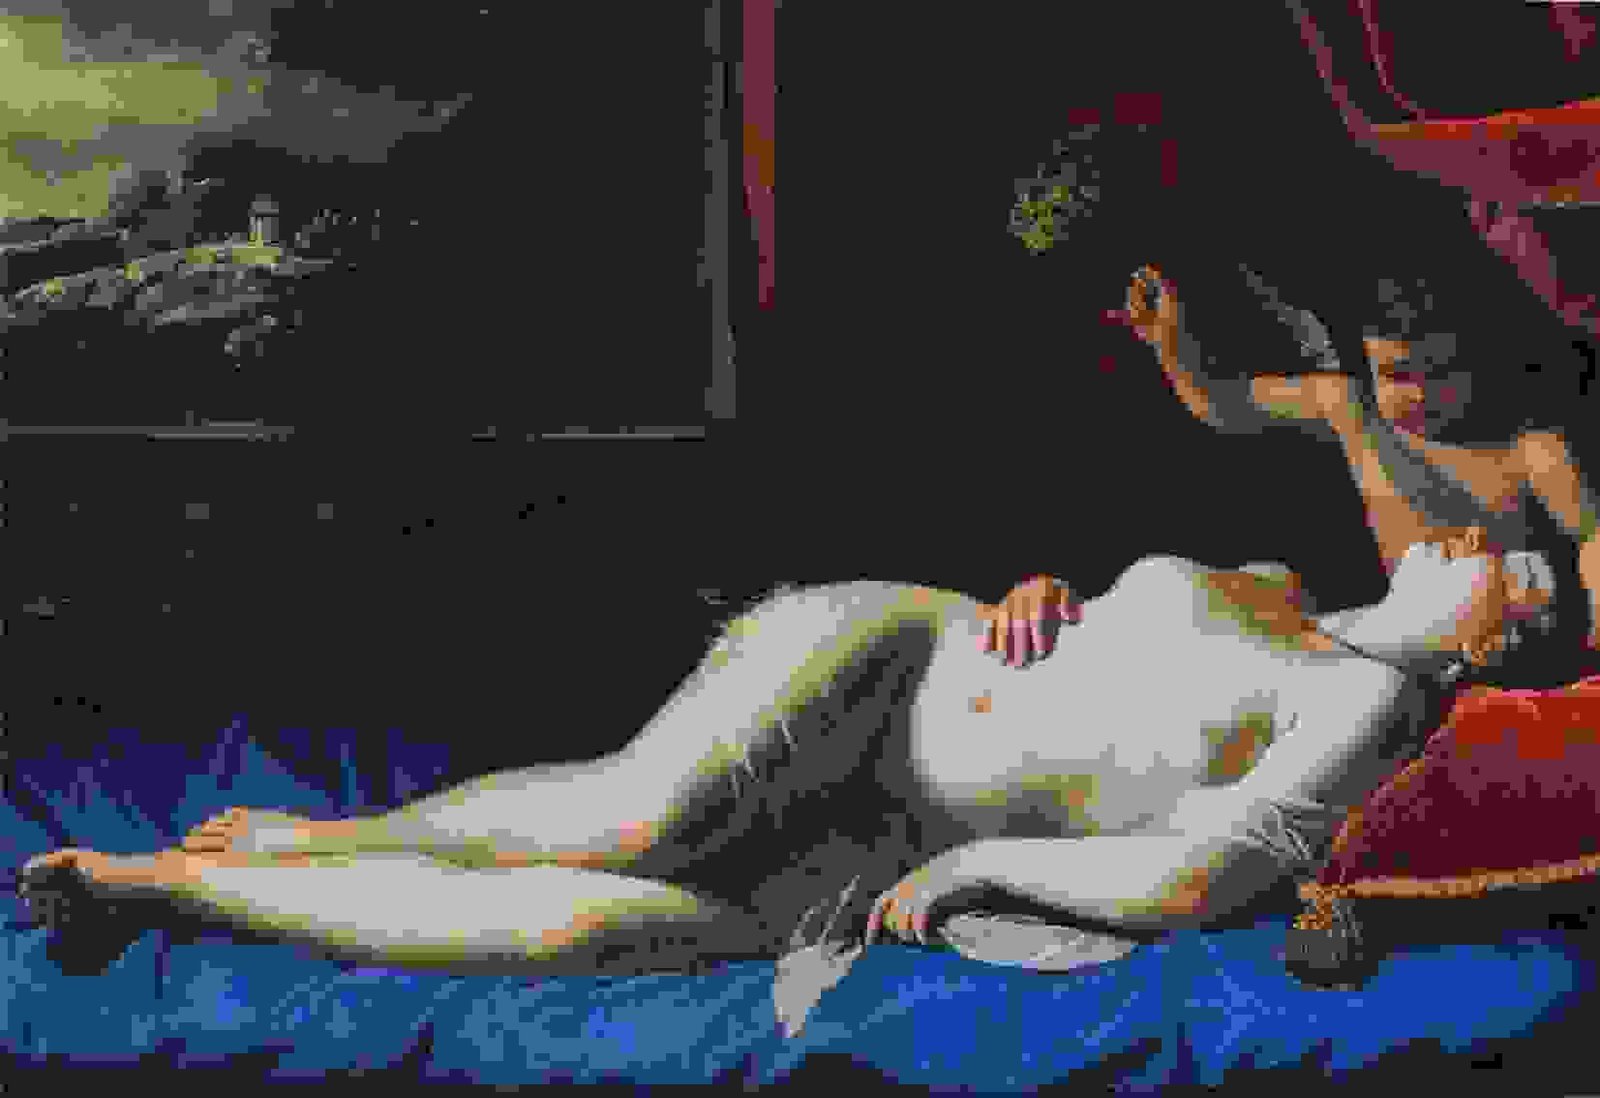 Venus And Cupid Sleeping Venus Artist Artemisia